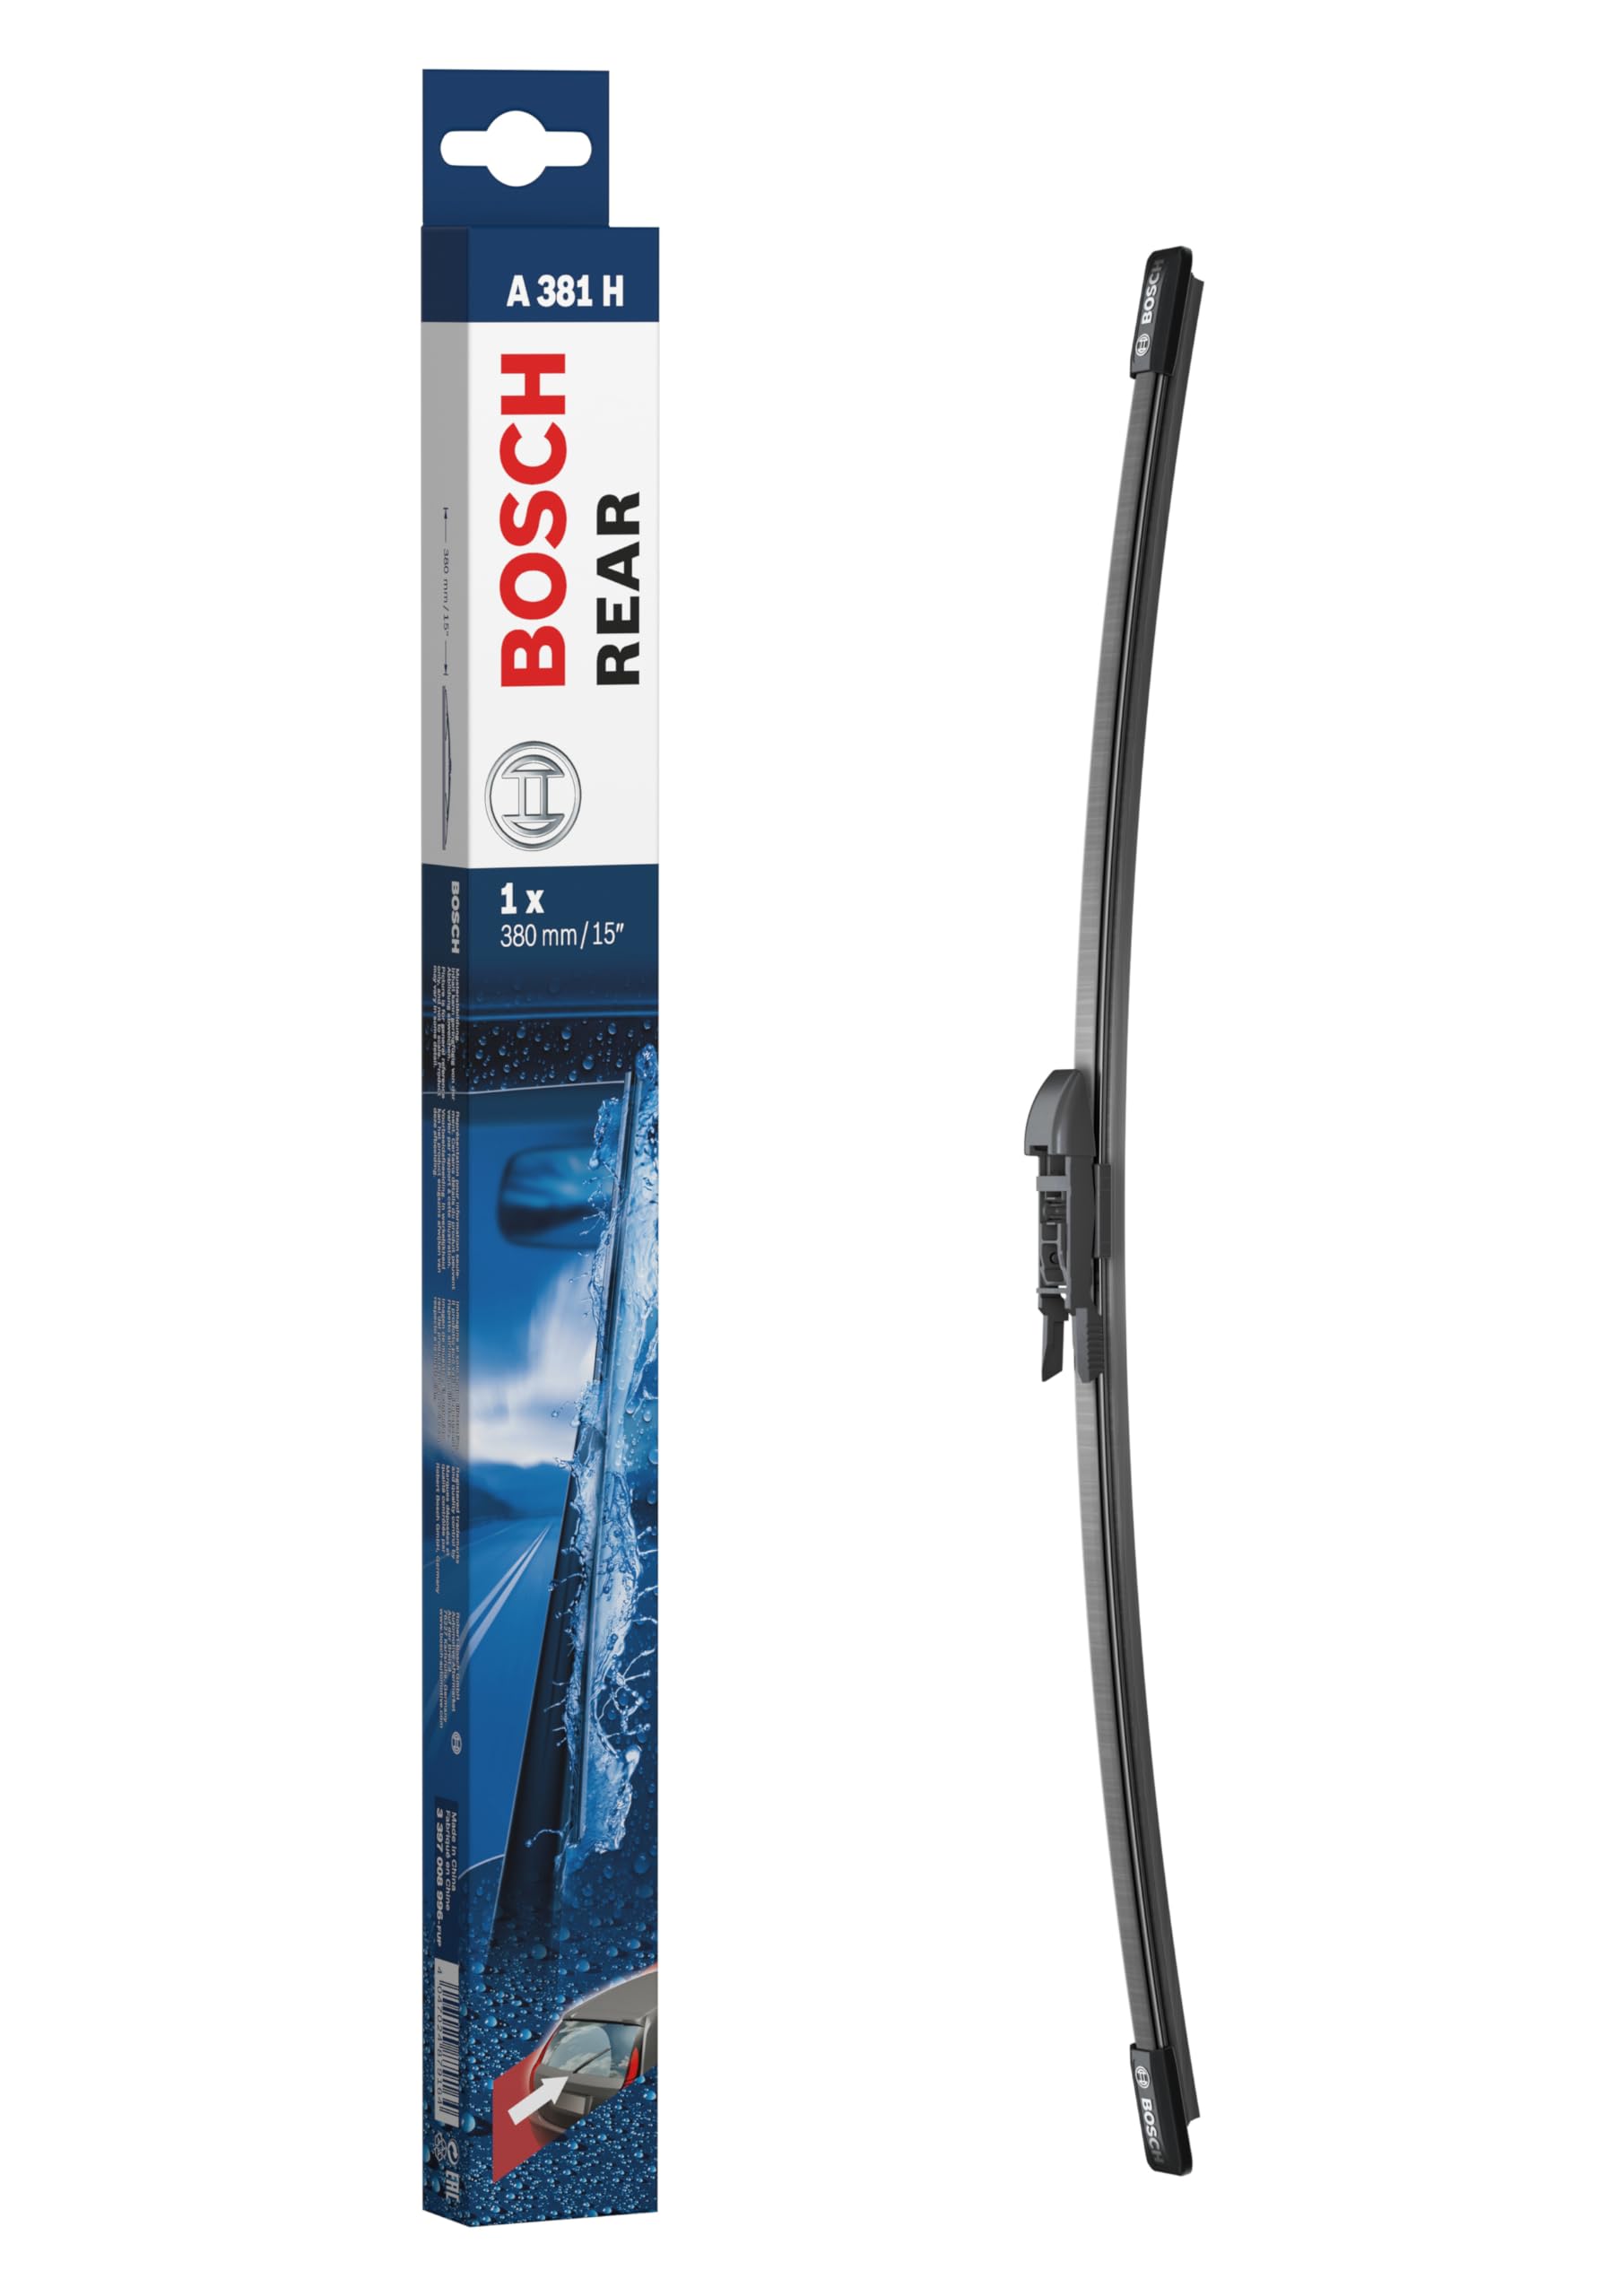 Bosch Scheibenwischer Rear A381H, Länge: 380mm – Scheibenwischer für Heckscheibe von Bosch Automotive